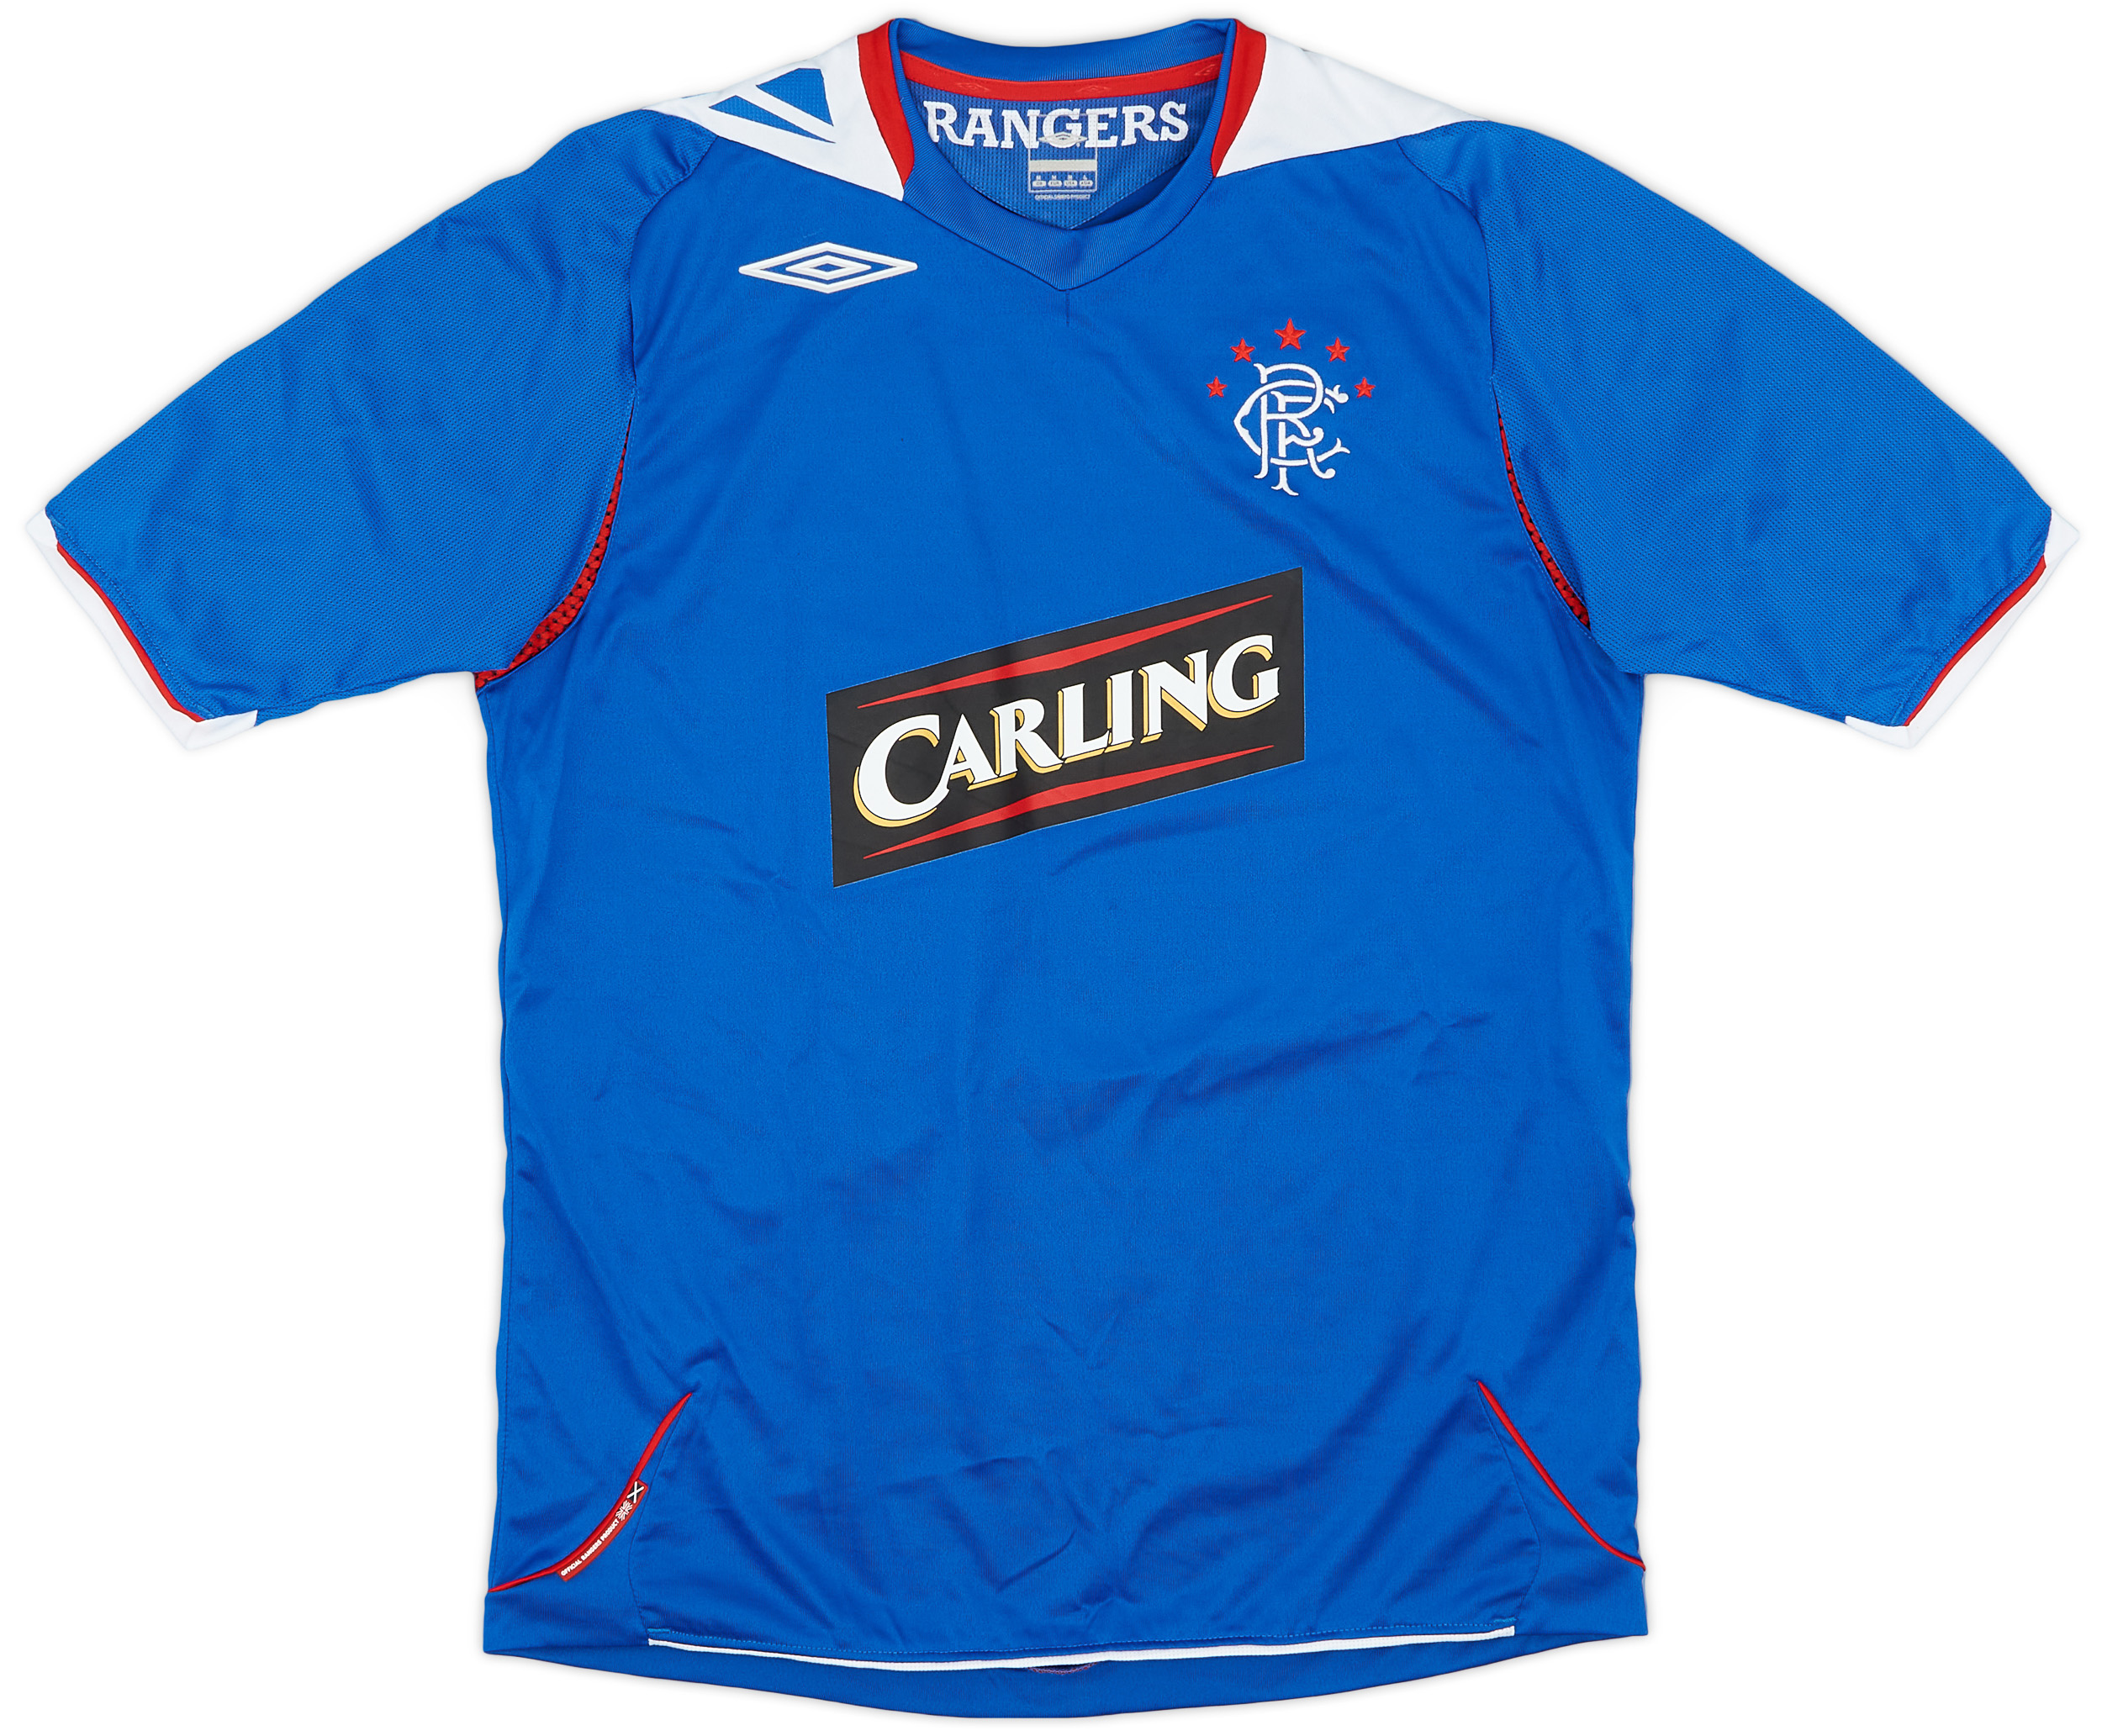 2006-07 Rangers Home Shirt - 8/10 - ()